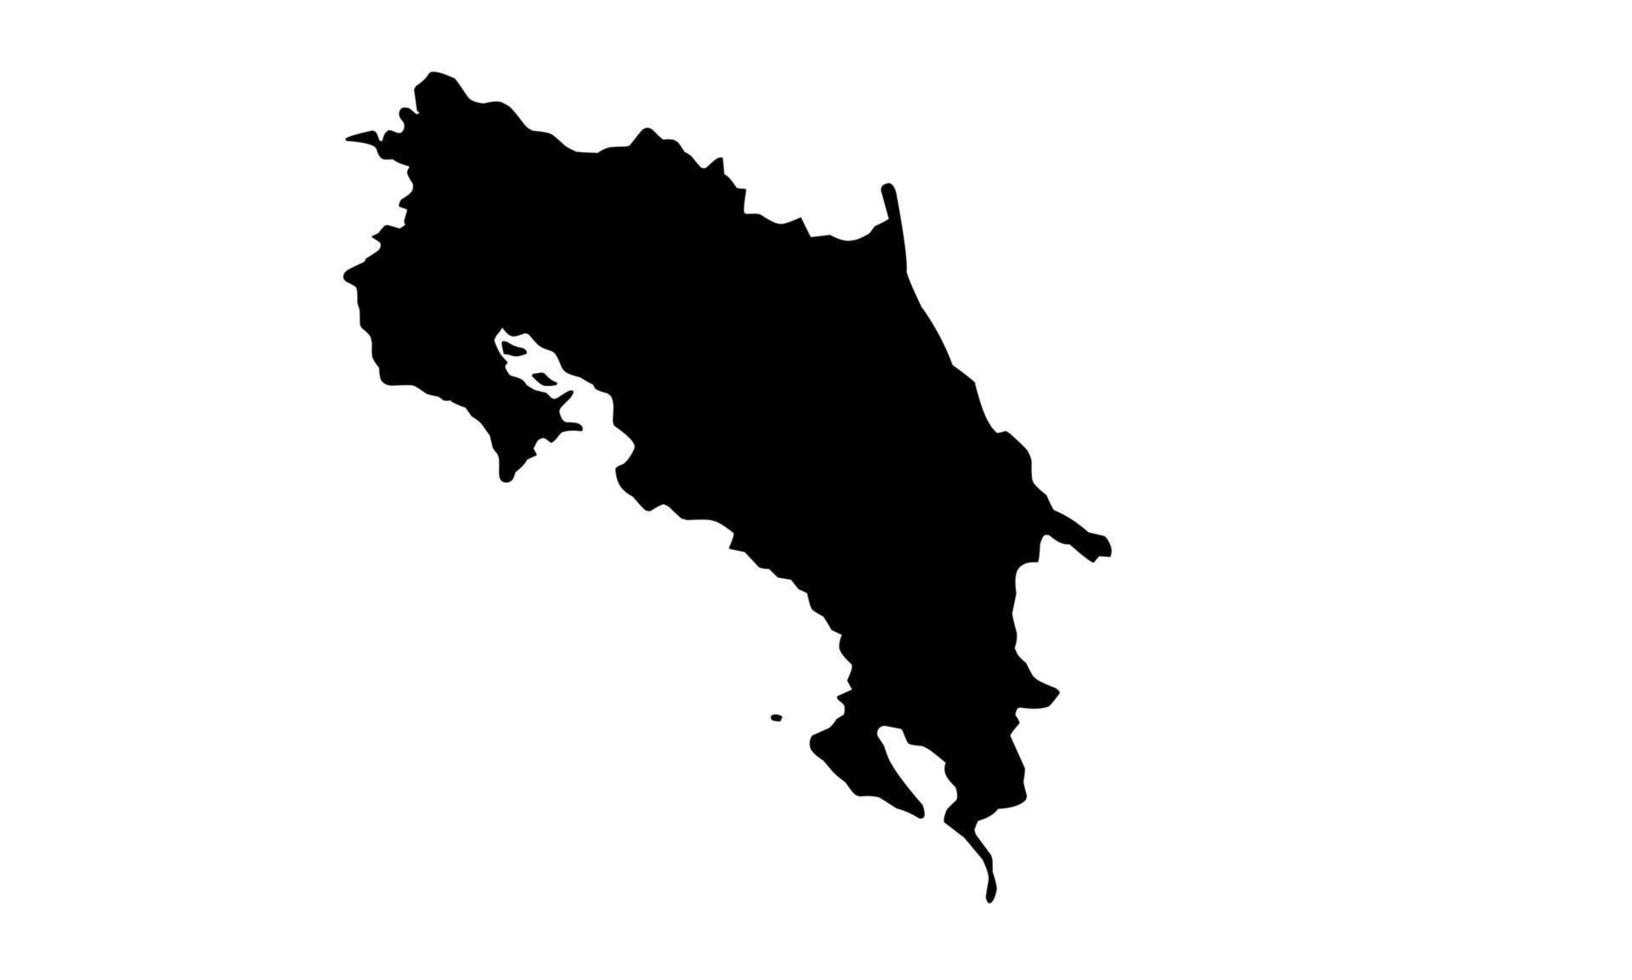 Kosta Rika Karte schwarze Silhouette auf weißem Hintergrund vektor